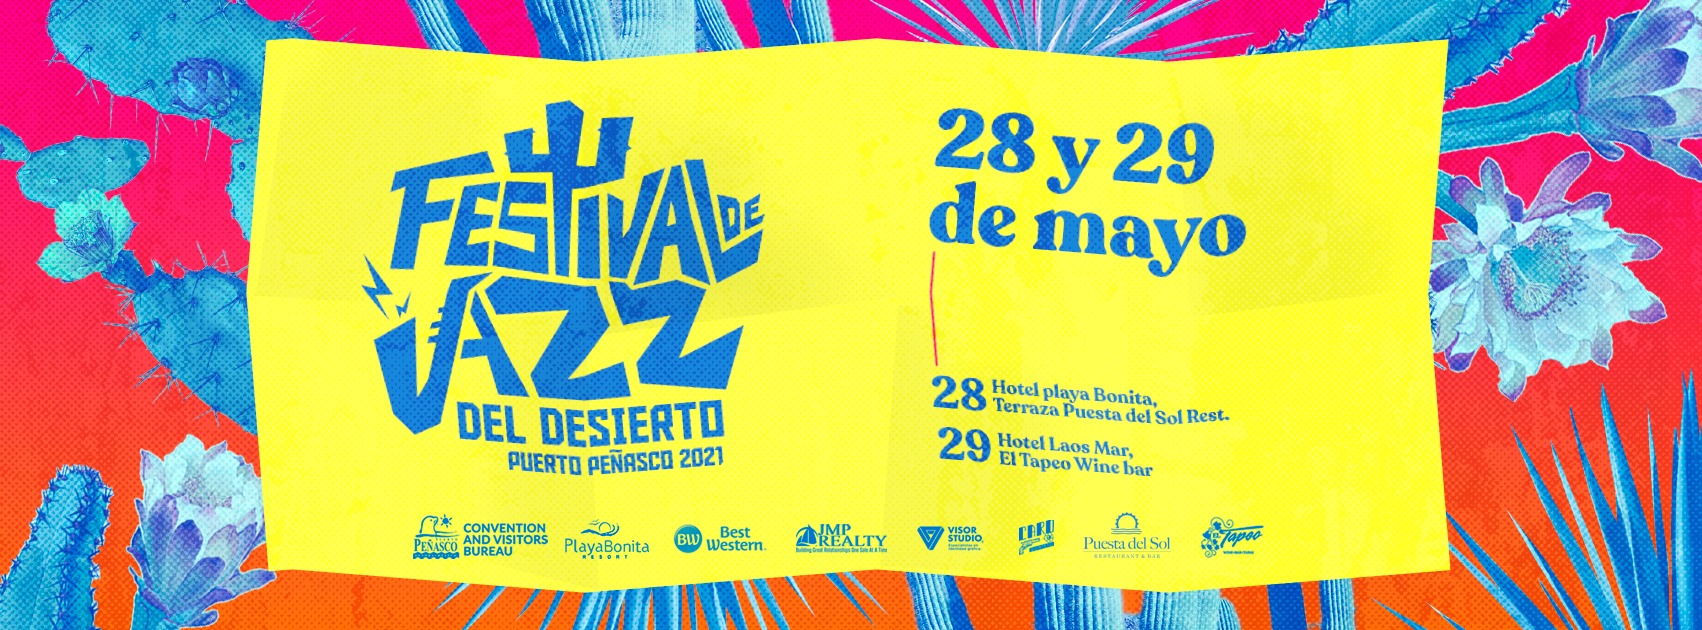 Festival-de-jazz-del-desierto-el-tapeo-mayo-28-y-29 Festival de Jazz del Desierto en Playa Bonita y El Tapeo